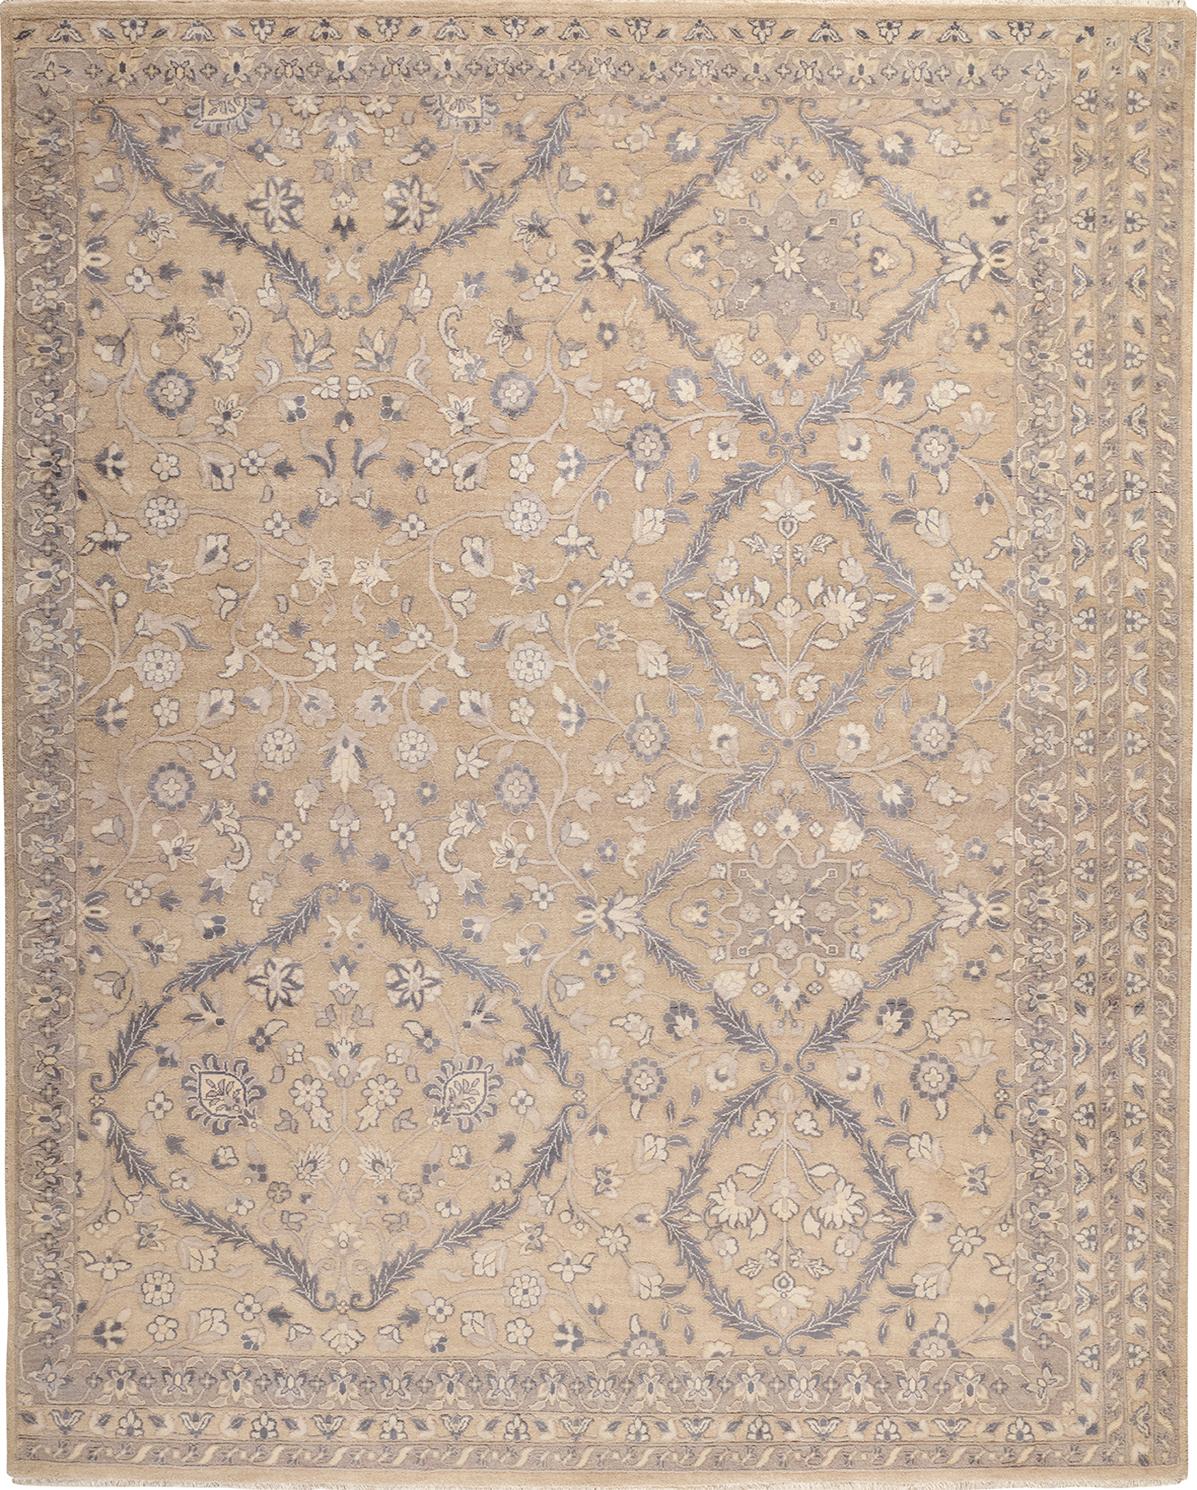 Dieser reizvolle Teppich besticht durch außergewöhnlich nuancierte Medaillons, die aus
noch fließender und eleganter durch ihre einzigartigen Konturen, die sowohl organische als auch
mäandernde Konturen. Neuartig sind die kronleuchterartigen